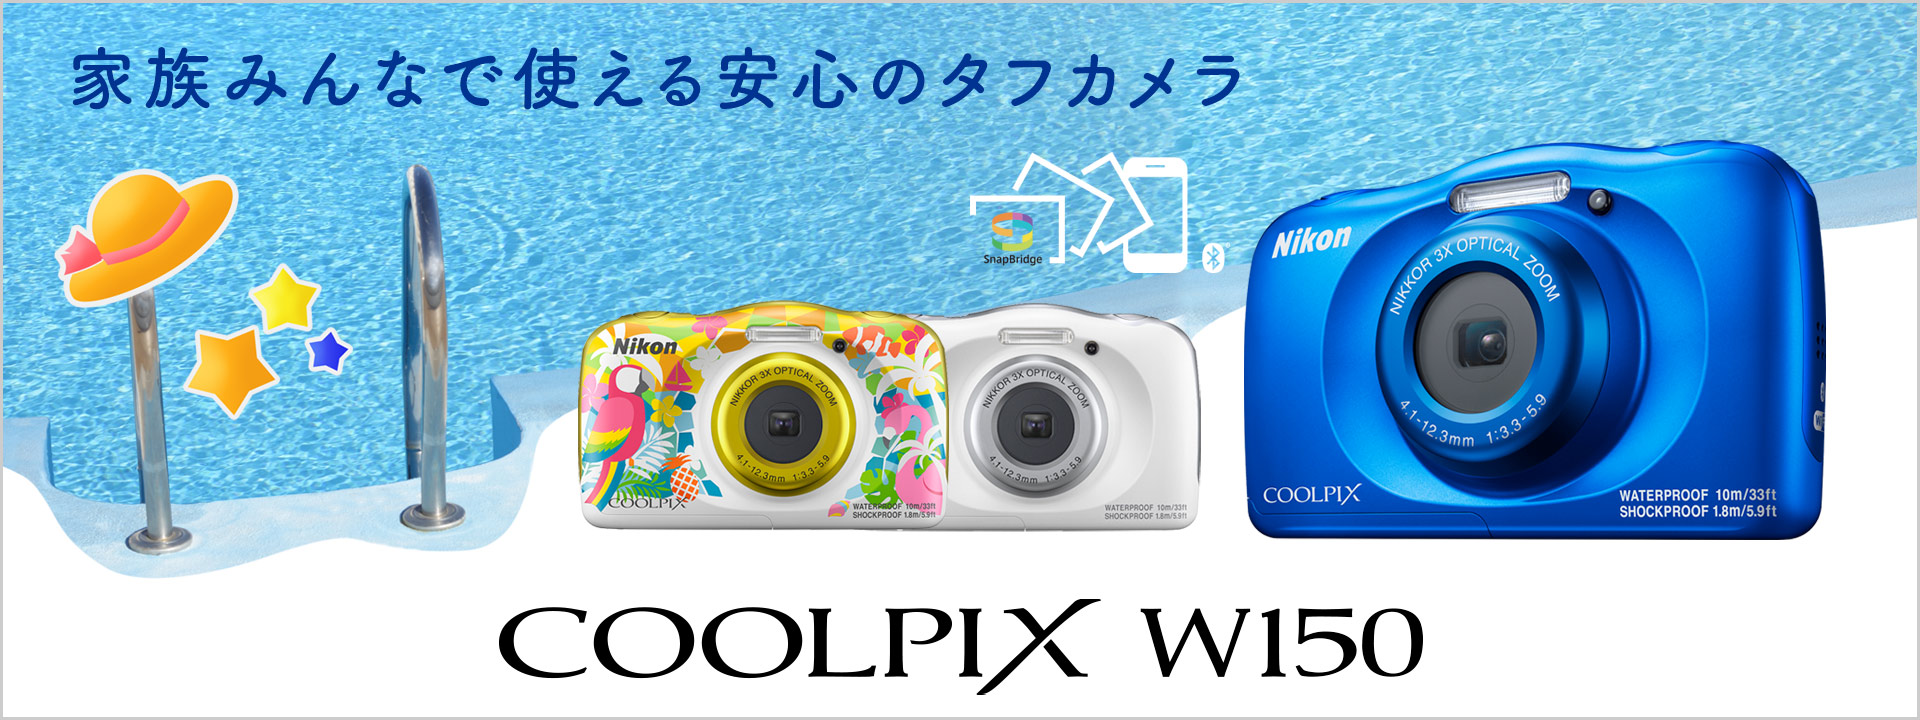 【新品未使用】ニコン防水デジタルカメラ COOLPIX-W150(BL) ブルー